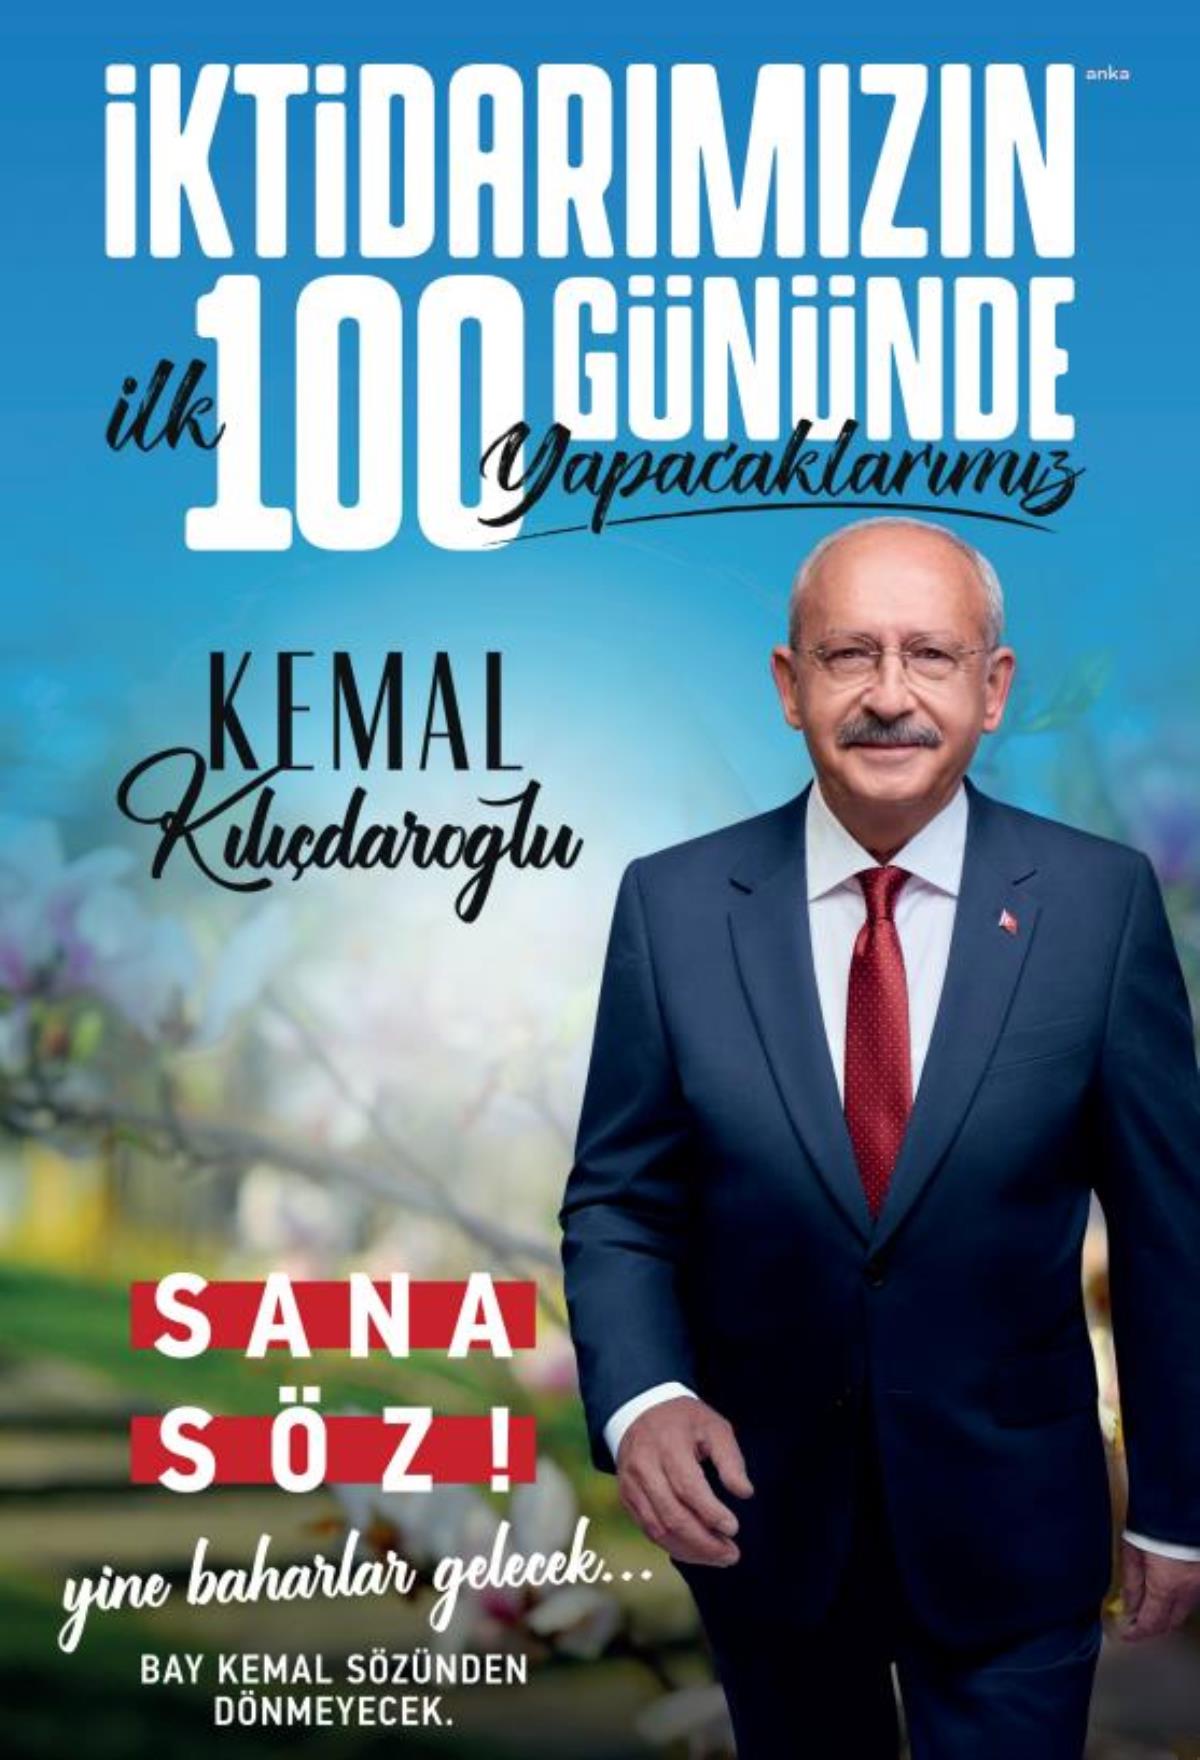 Millet İttifakı Cumhurbaşkanı Adayı Kemal Kılıçdaroğlu'ndan, "İktidarımızın Birinci 100 Gününde Yapacaklarımız" Başlıklı Broşür